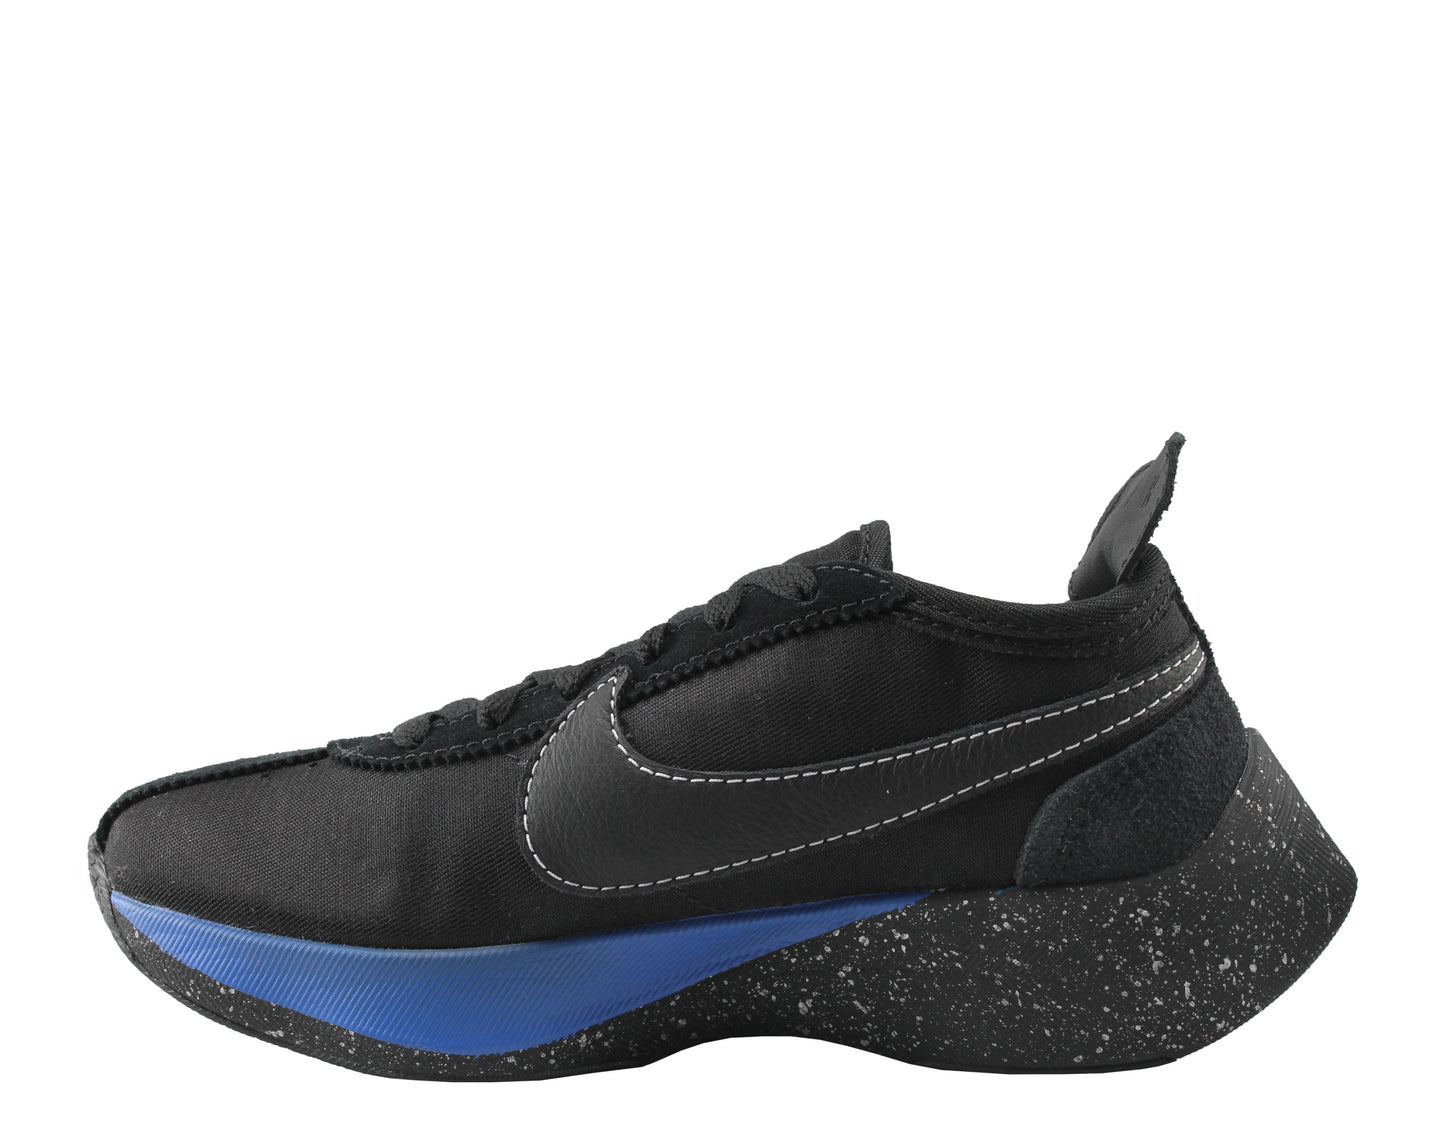 Nike Moon Racer QS Black/Black-White-Racer Blue Men's Running Shoes BV7779-001